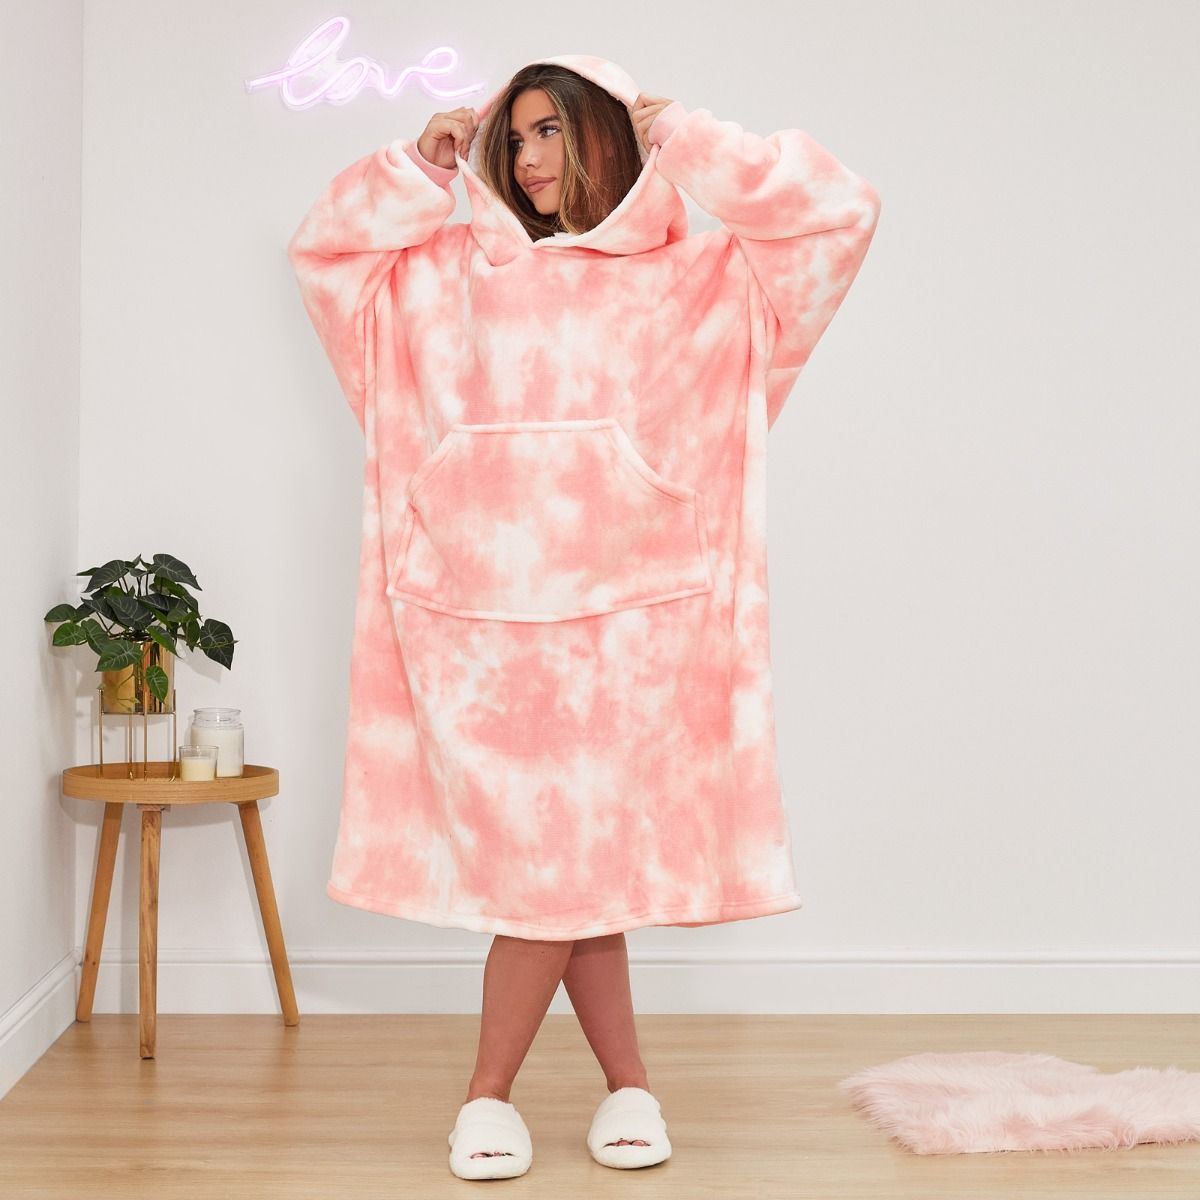 Dreamscene Extra Long Tie Dye Hoodie Blanket - Blush Pink